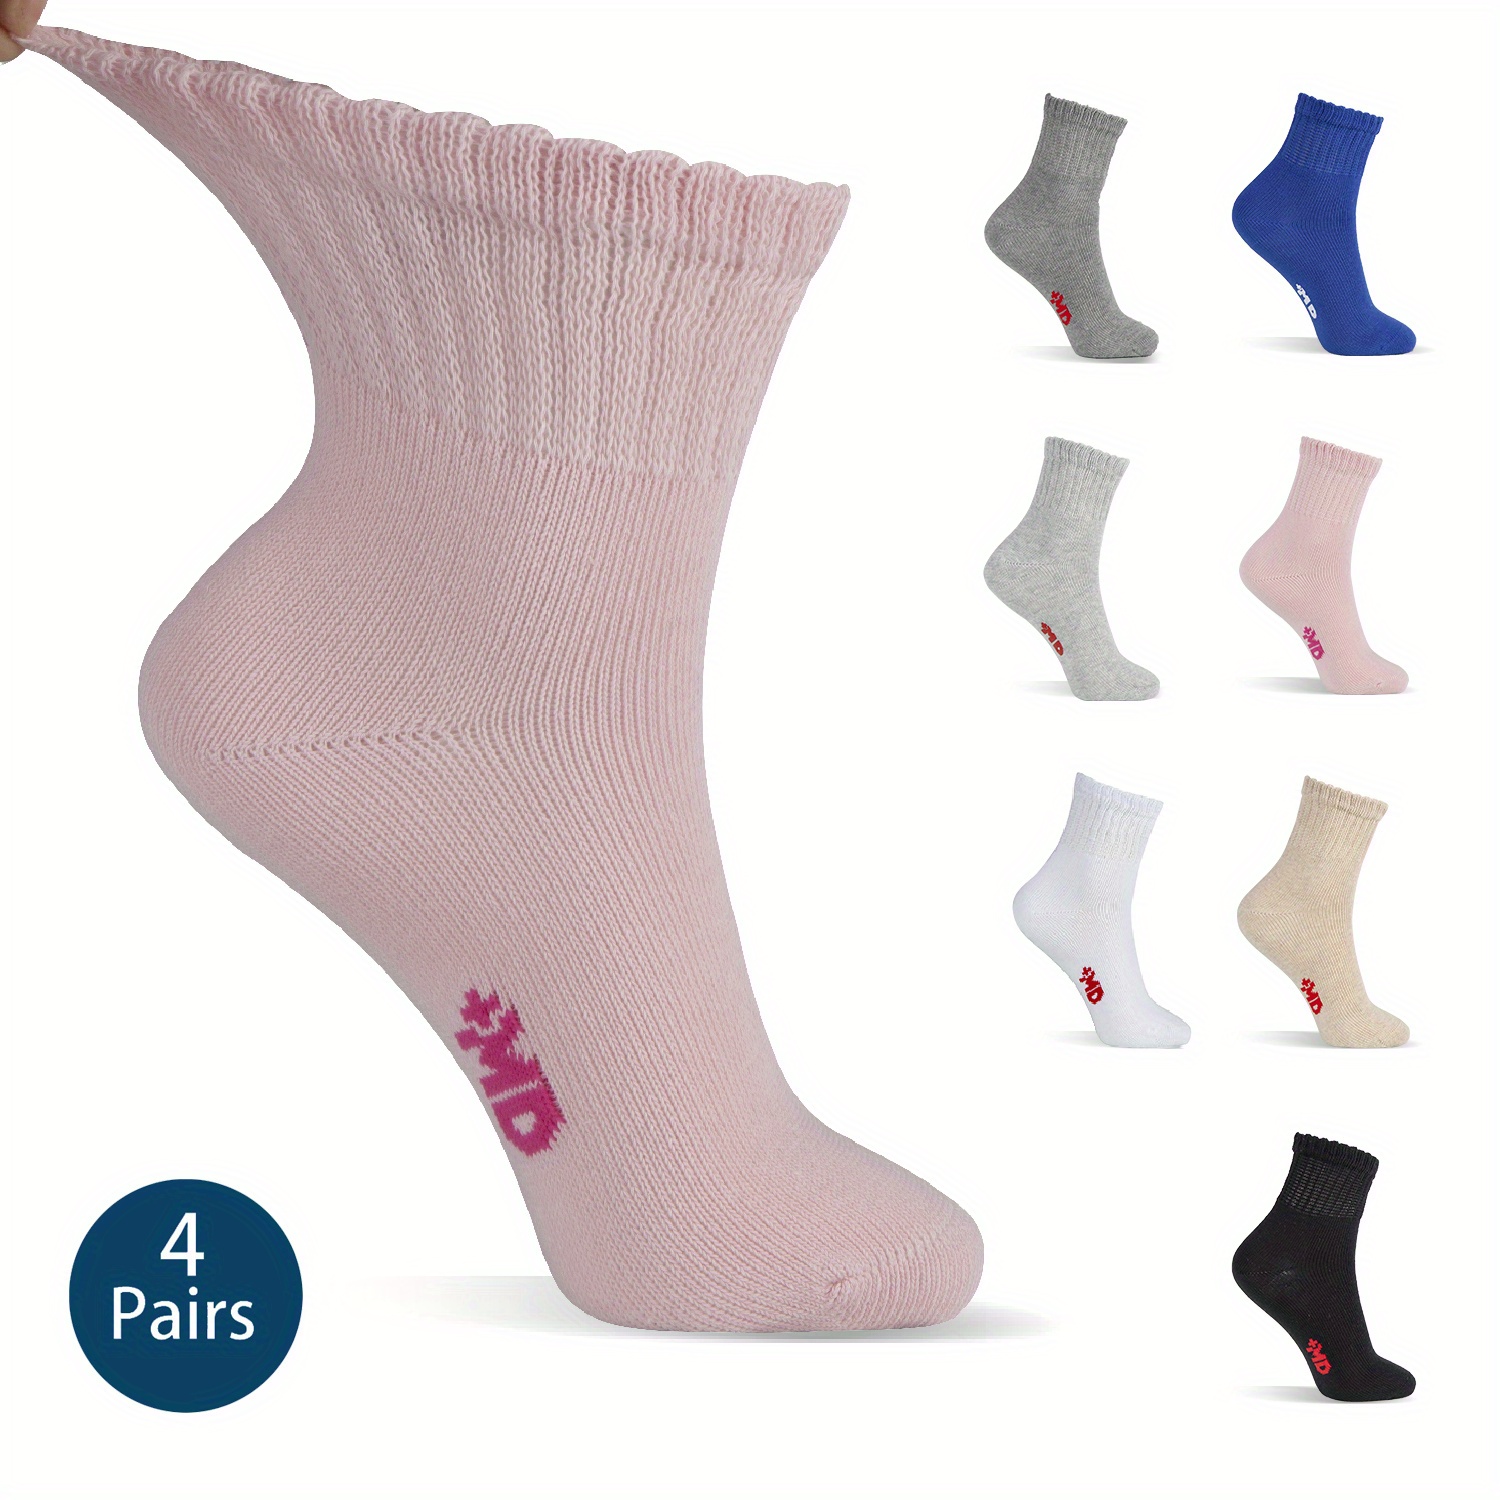 Calcetines Mujer para Diabeticos y Pies Sensibles, Incluye 4 Pares Color  Blanco, Calcetas para Diabe Med 4 pares mujer